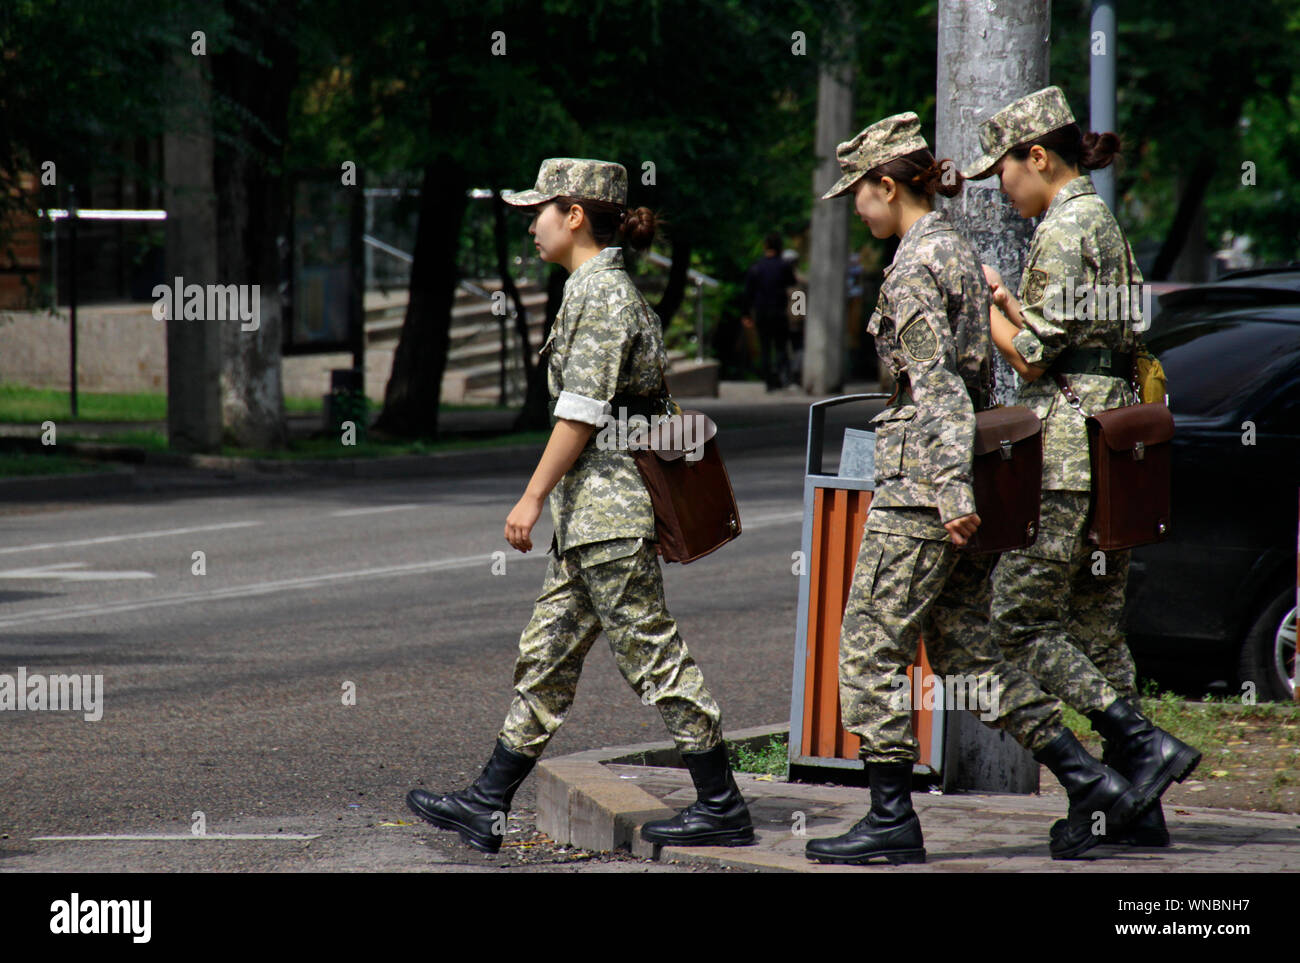 Almaty, Kazakhstan - August 24, 2019: Three women in uniform crossing a street in Almaty. Stock Photo